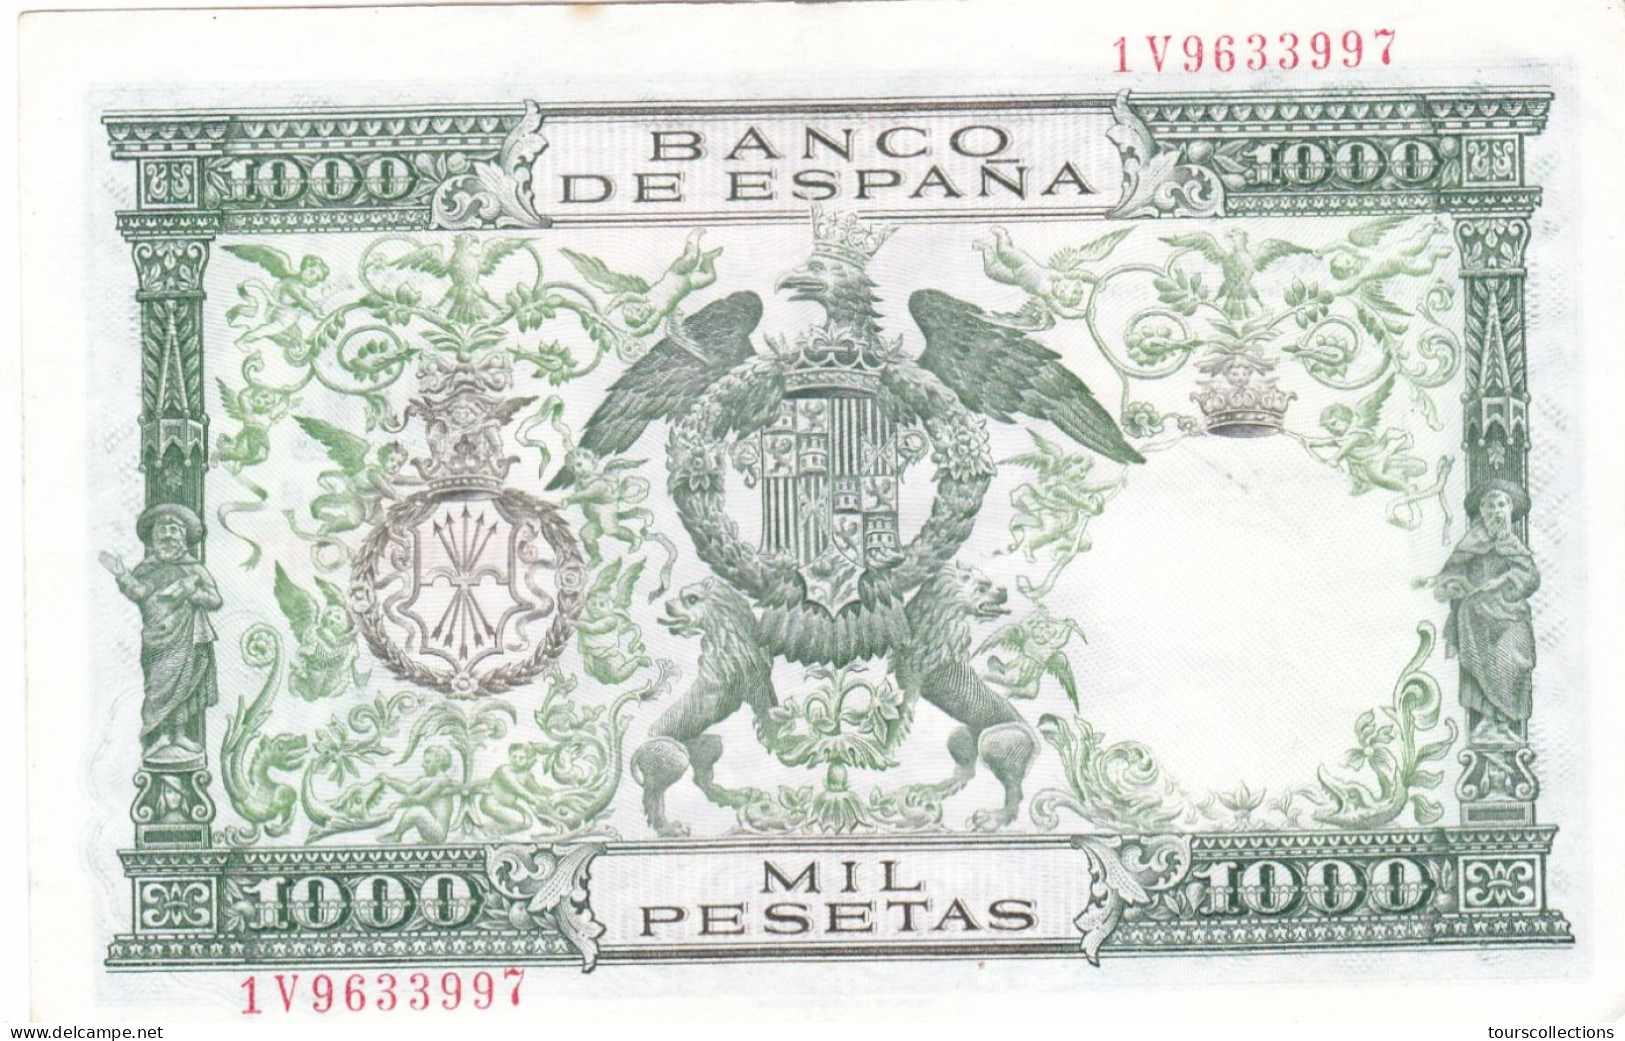 ESPAGNE - BILLET De BANQUE 1000 PESETAS 29/11/ 1957 - 1V9633997 - PICK 149 A Roi Ferdinand II D'Aragon Reine Isabelle I - 1000 Pesetas